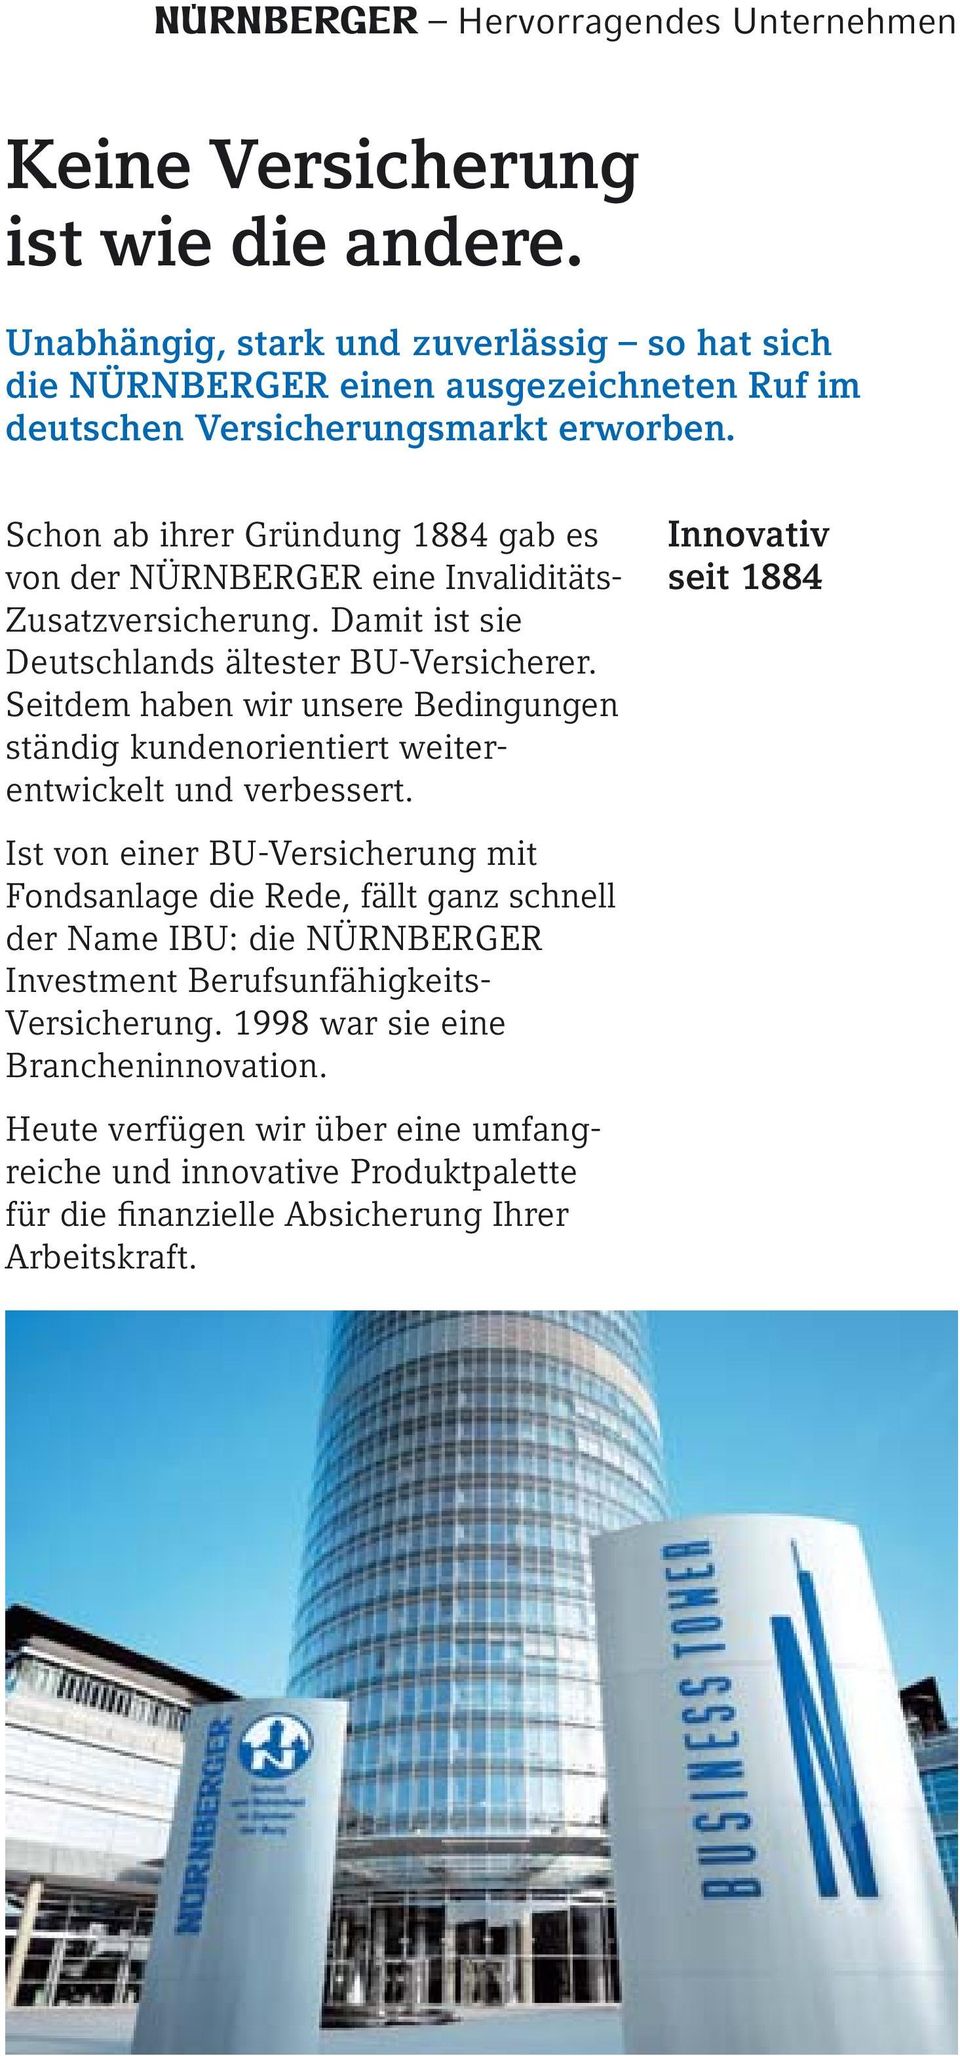 Schon ab ihrer Gründung 1884 gab es von der NÜRNBERGER eine Invaliditäts- Zusatzversicherung. Damit ist sie Deutschlands ältester BU-Versicherer.